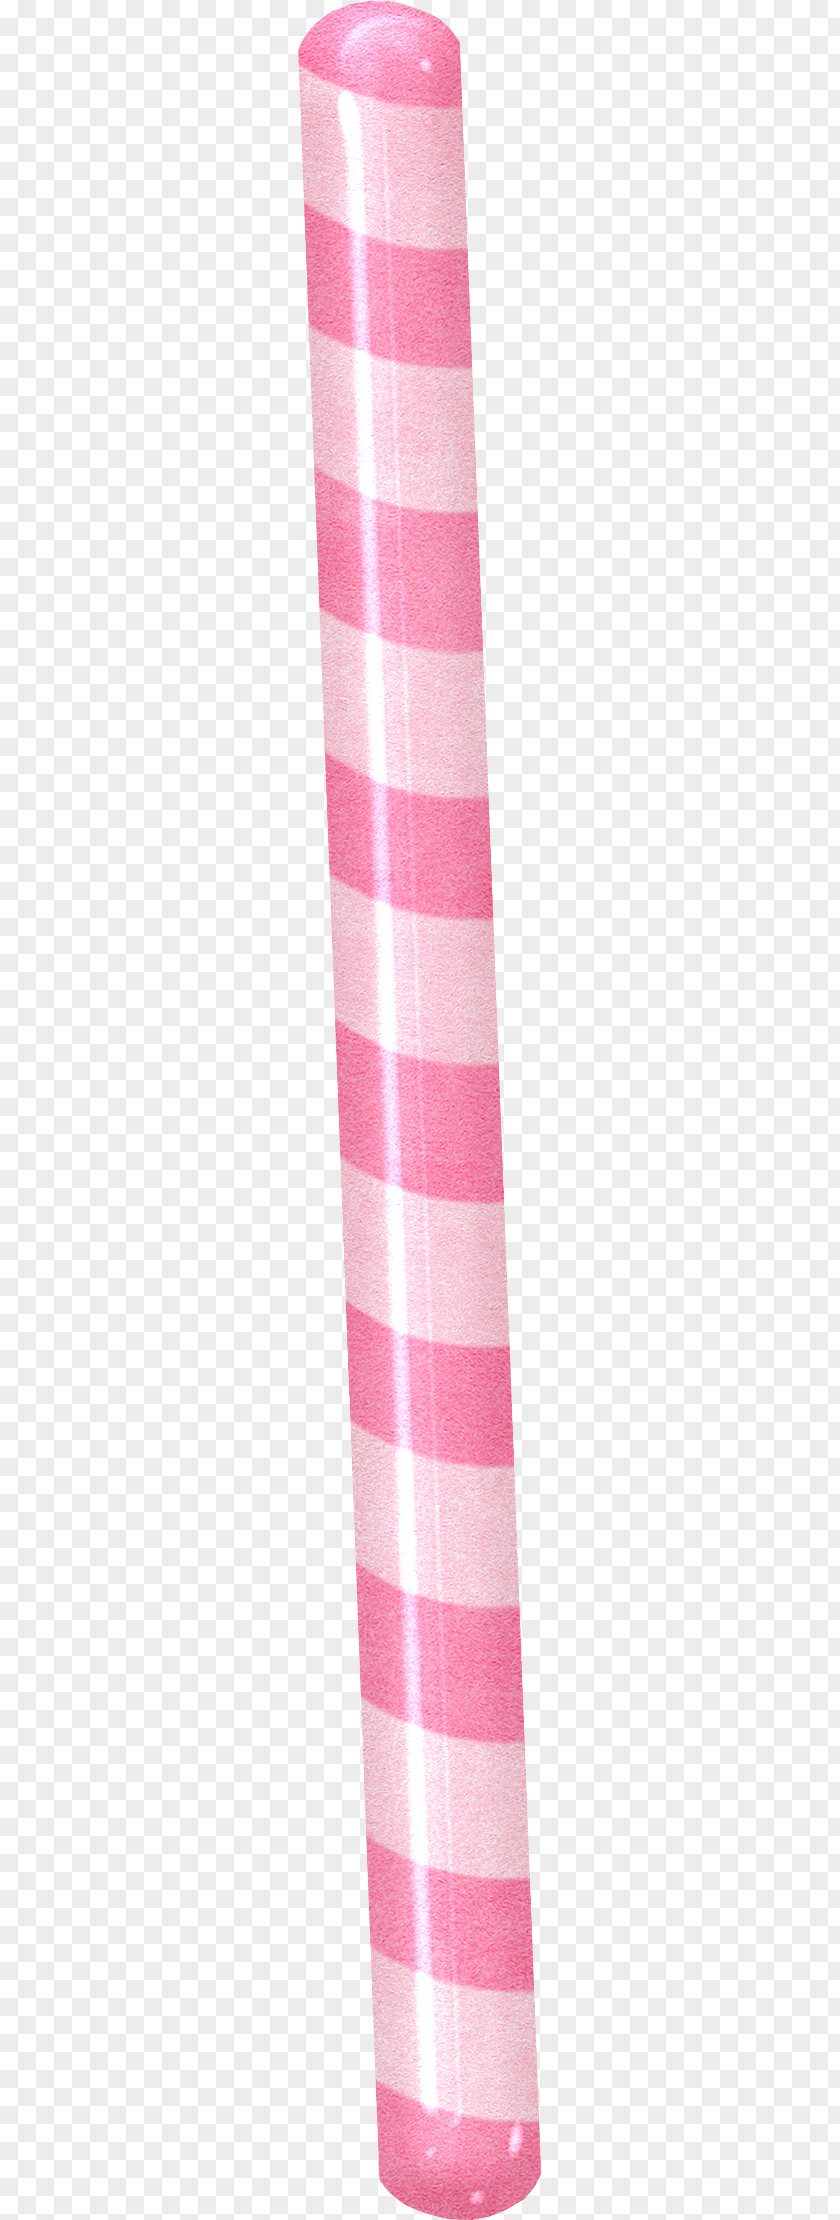 Sugar Stick Pink Pattern PNG